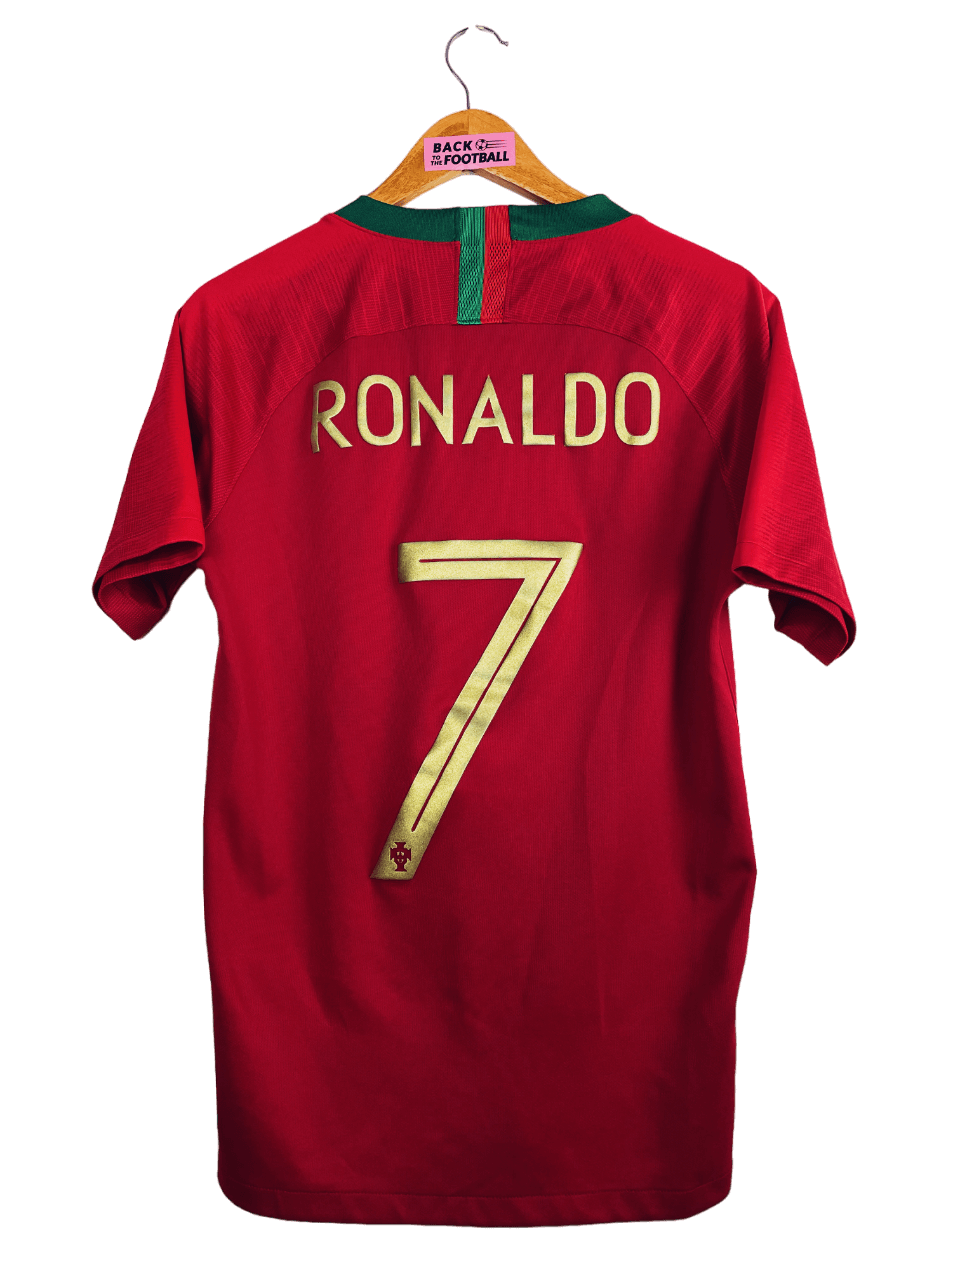 2018 / 2019 - Portugal - Ronaldo #7 (S)